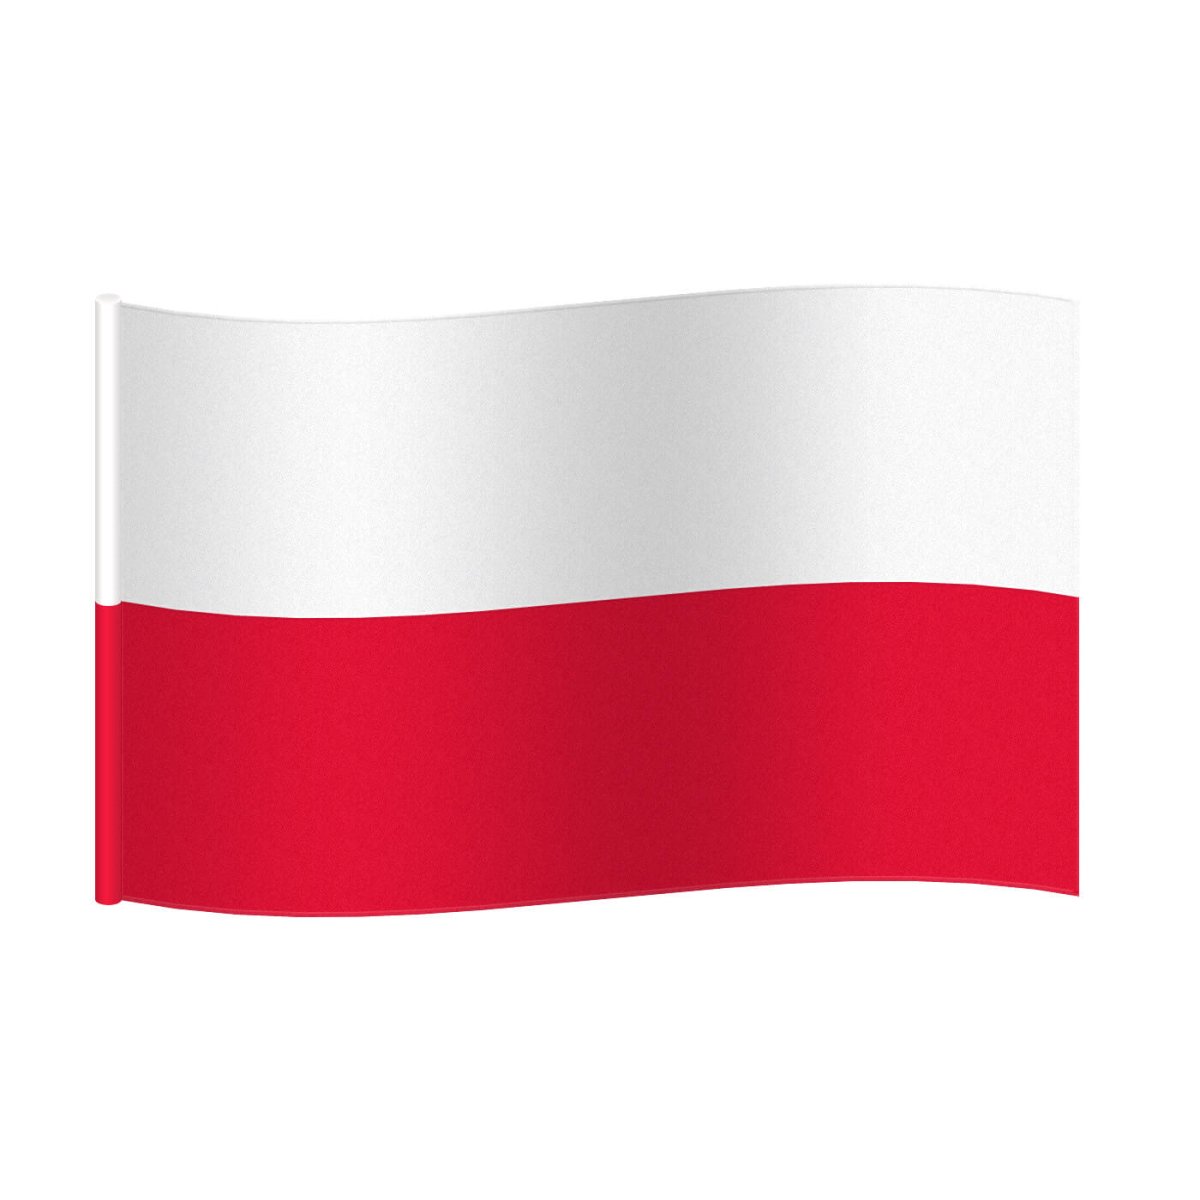 zdjęcie przedstawia flagę Polski